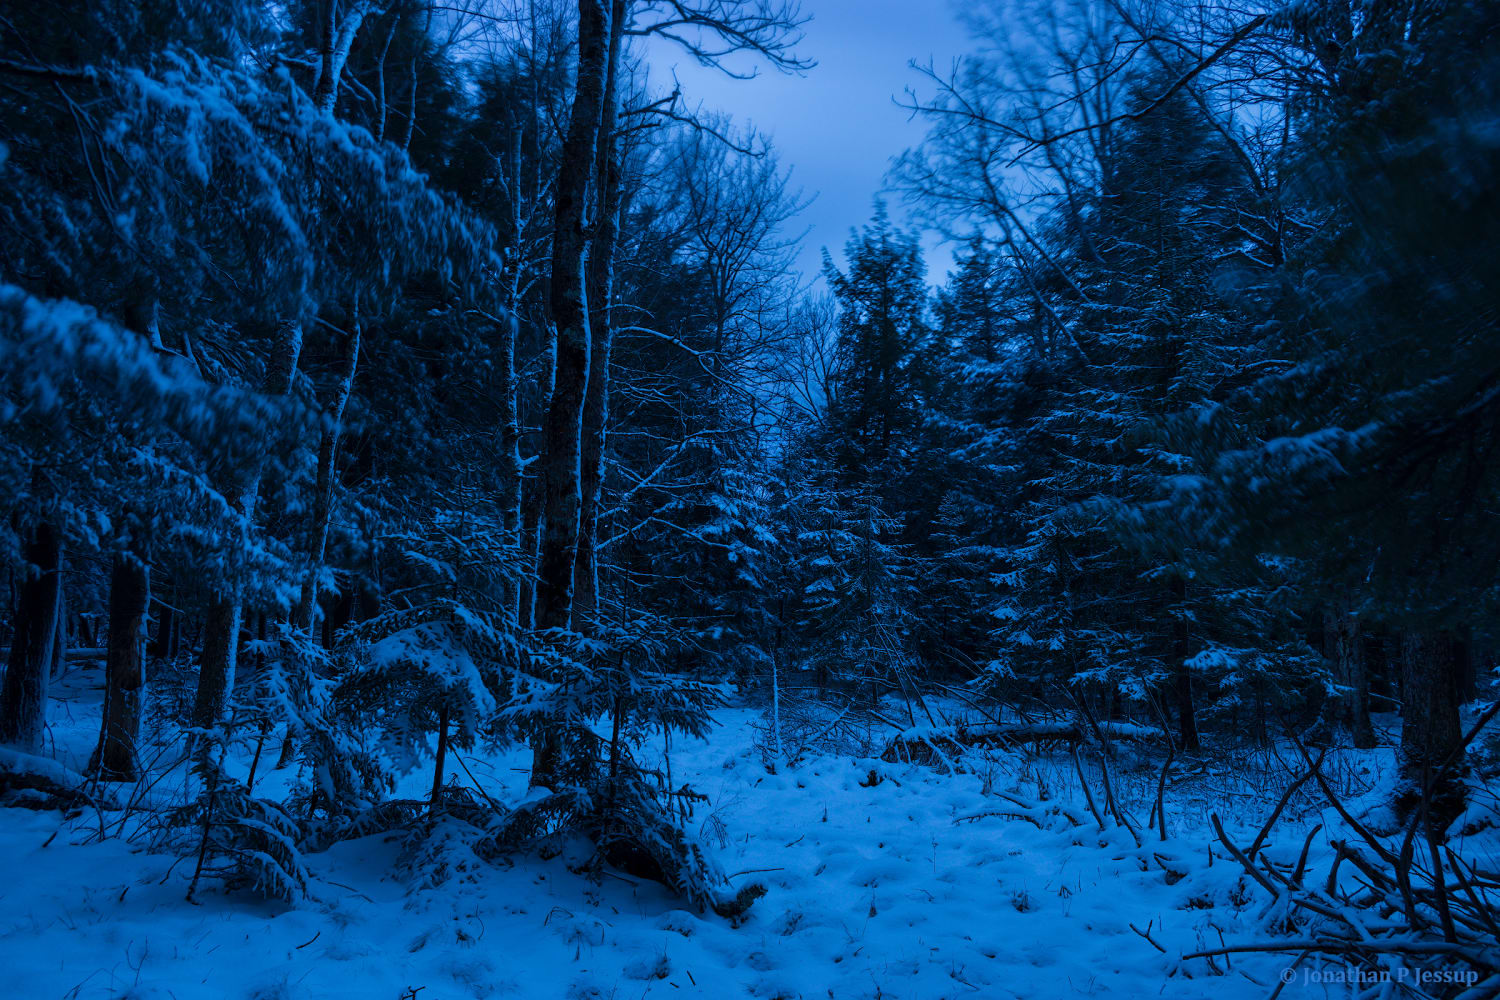 Bleak forest of eternal twilight